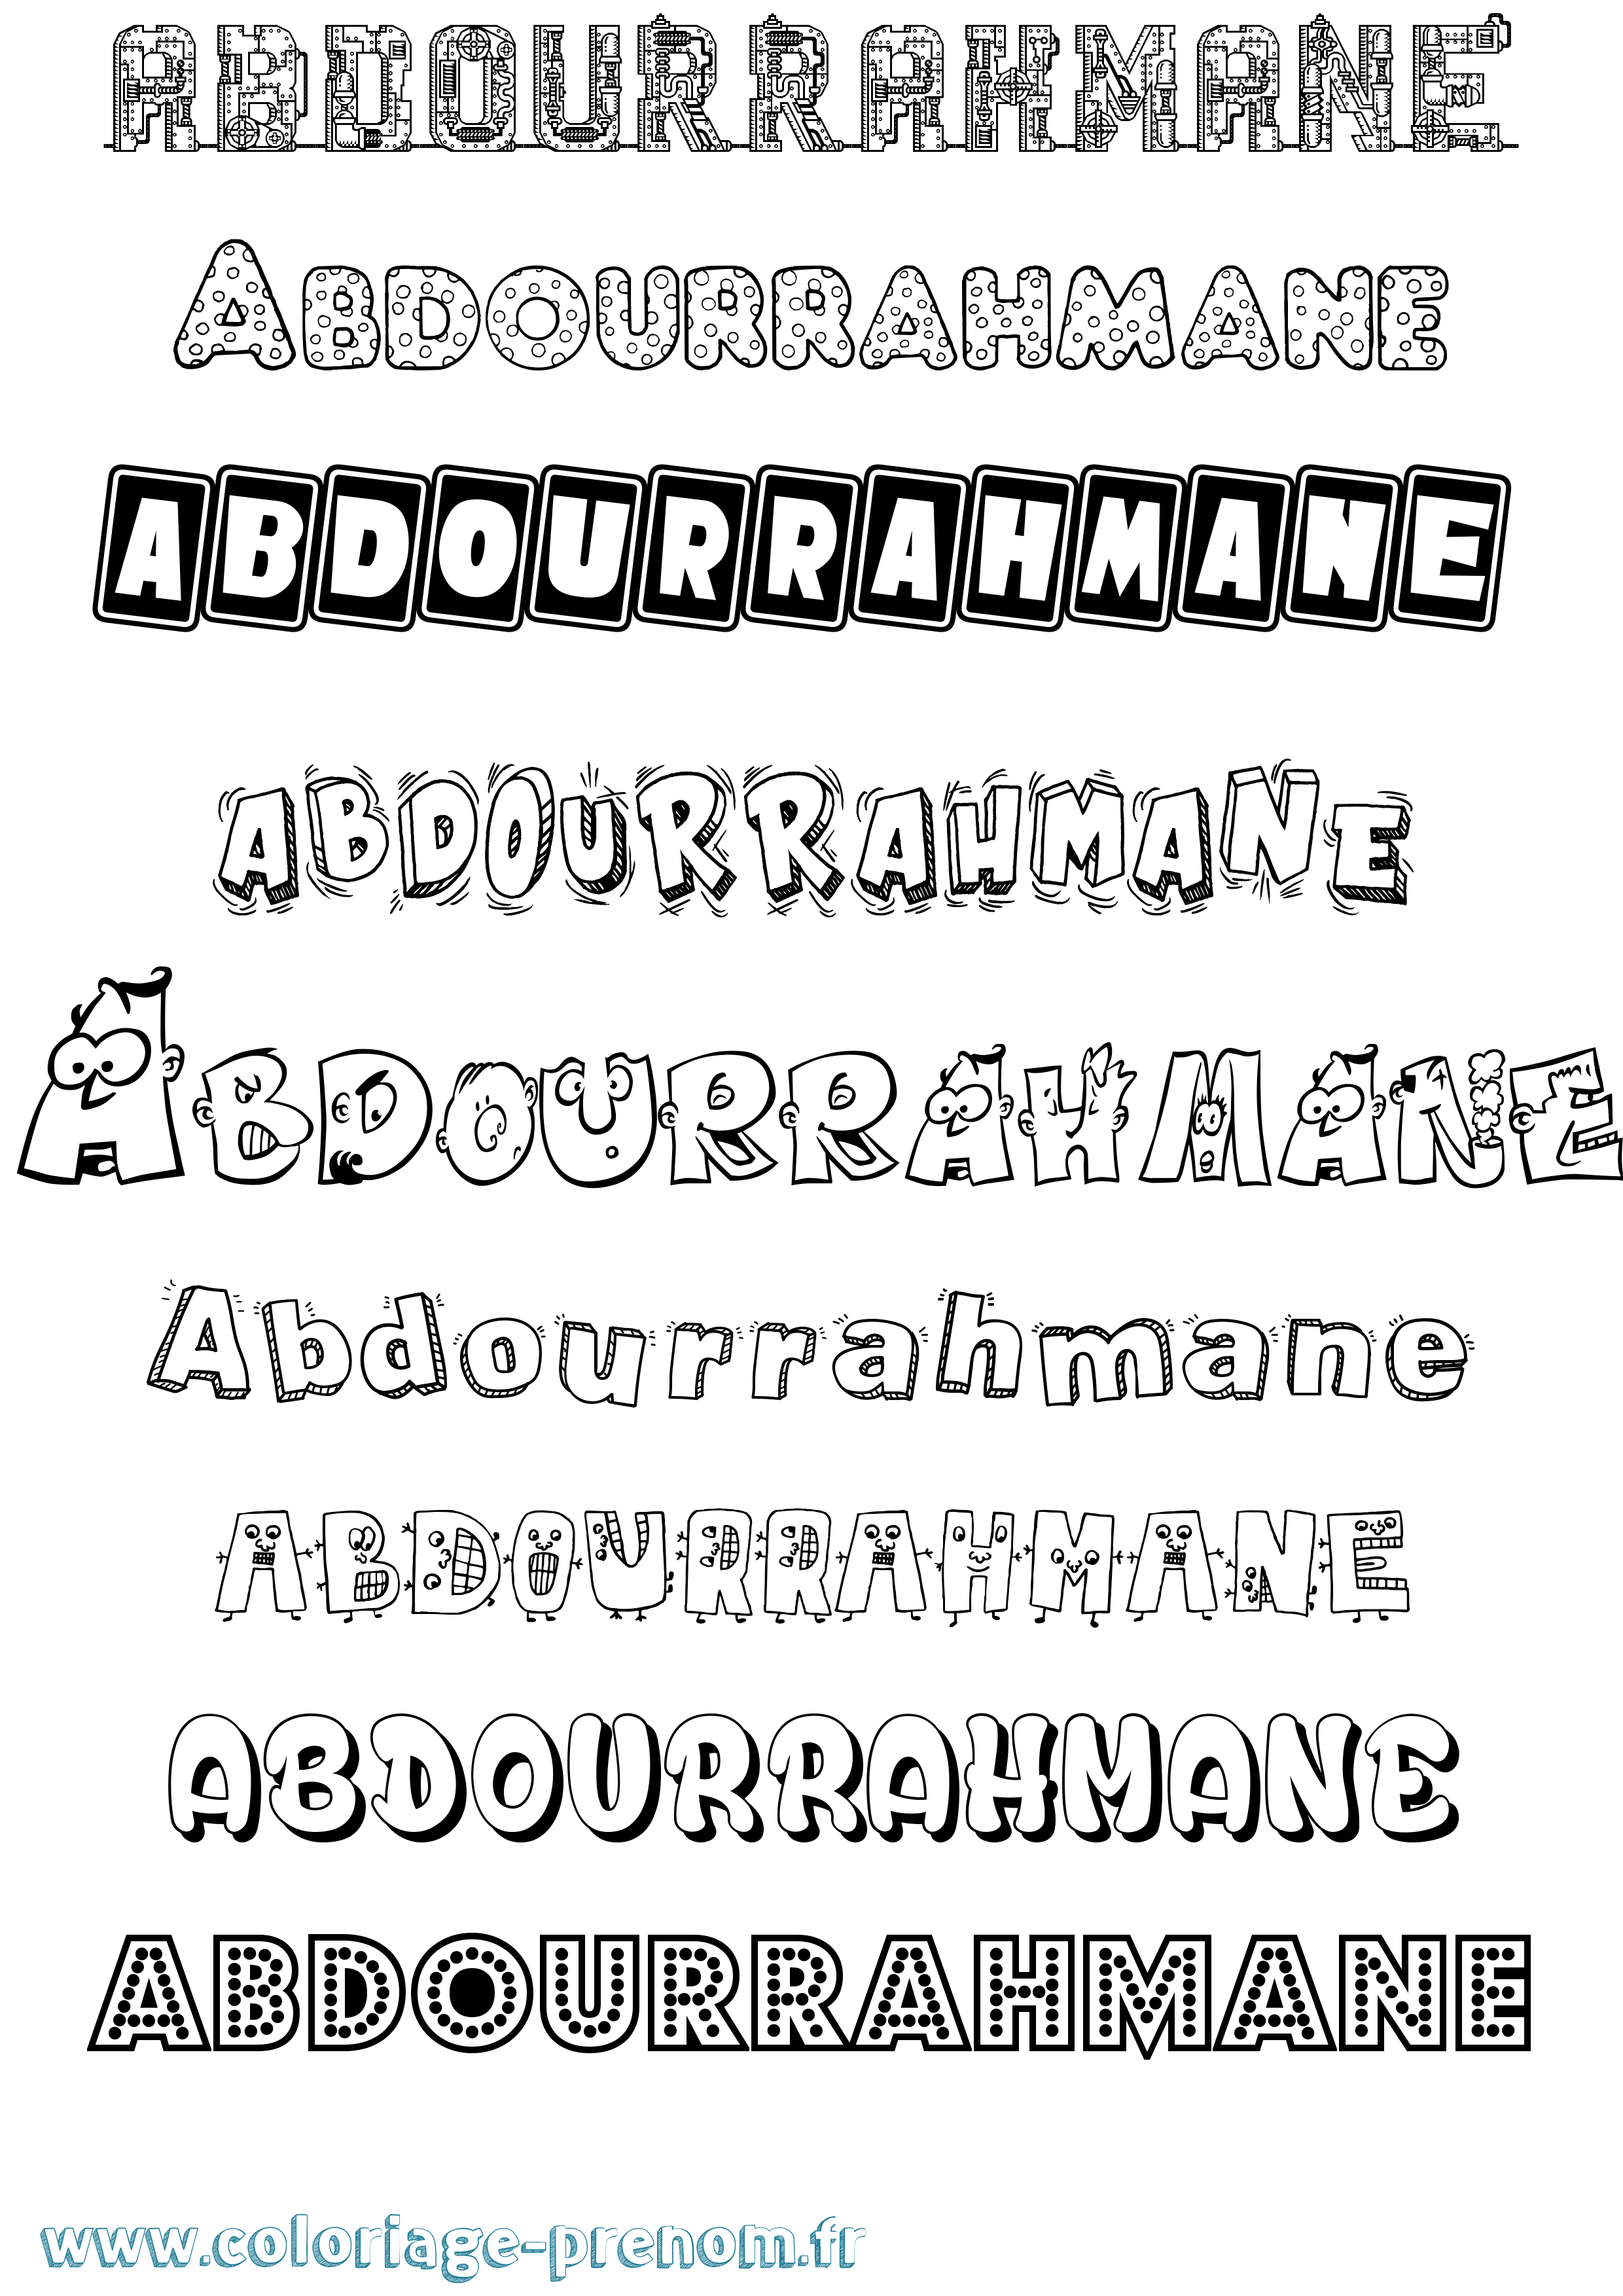 Coloriage prénom Abdourrahmane Fun